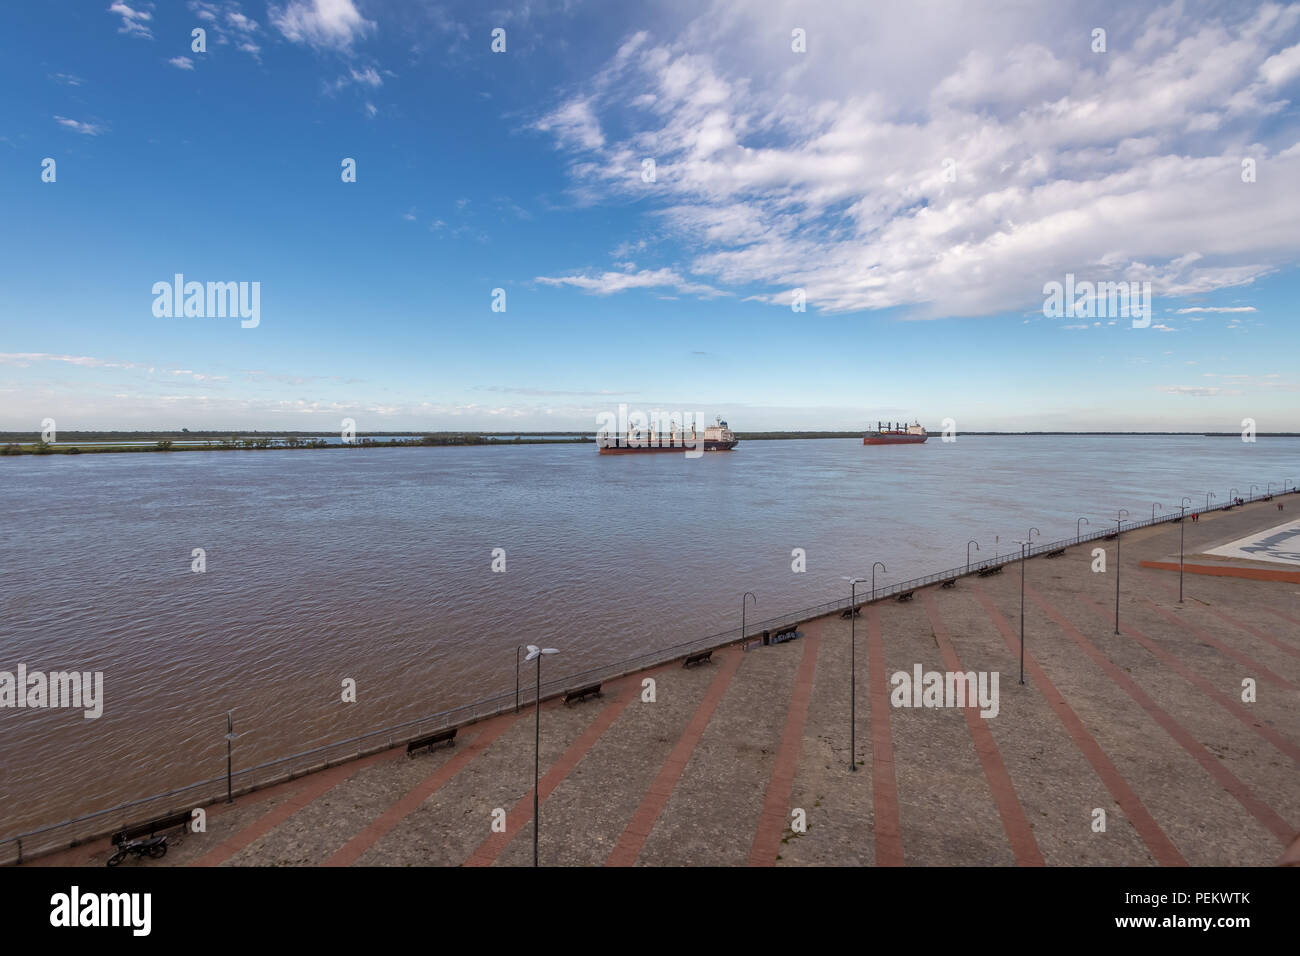 Ships in Parana River - Rosario, Santa Fe, Argentina Stock Photo